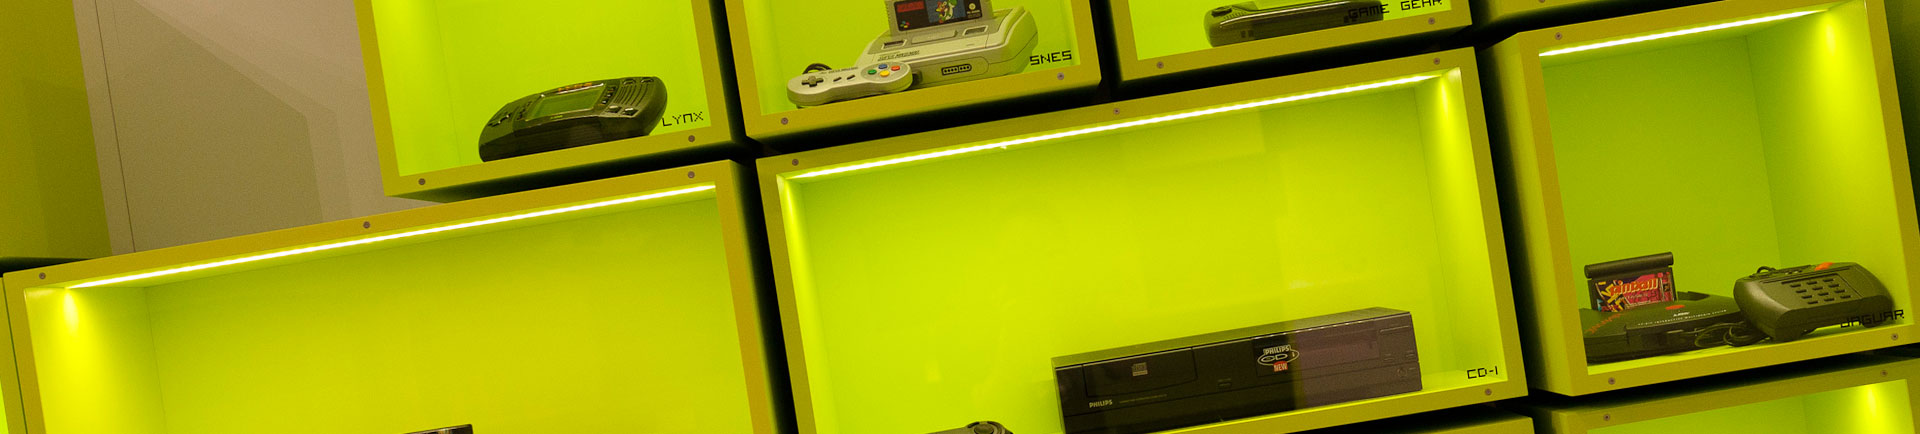 Computerspielemuseum Berlin – Spielekultur, Nostalgie und Rausch